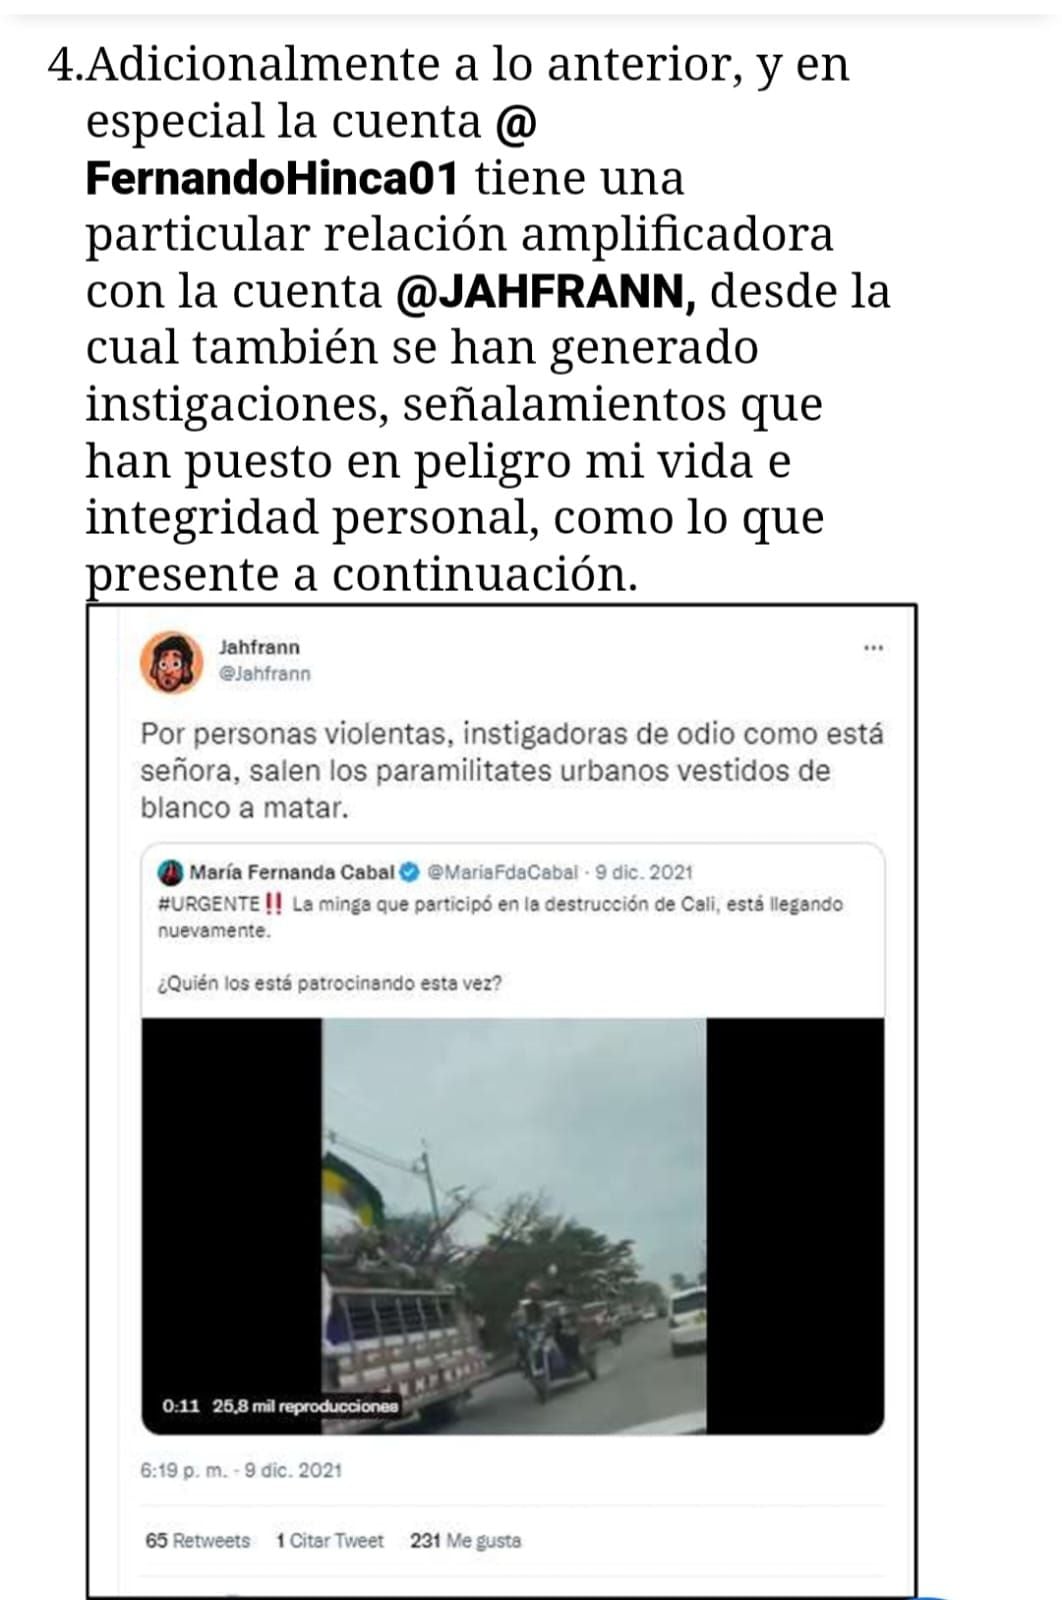 Esta es una de las pruebas que presentó María Fernanda Cabal de los ataques en redes sociales desde Rusia.